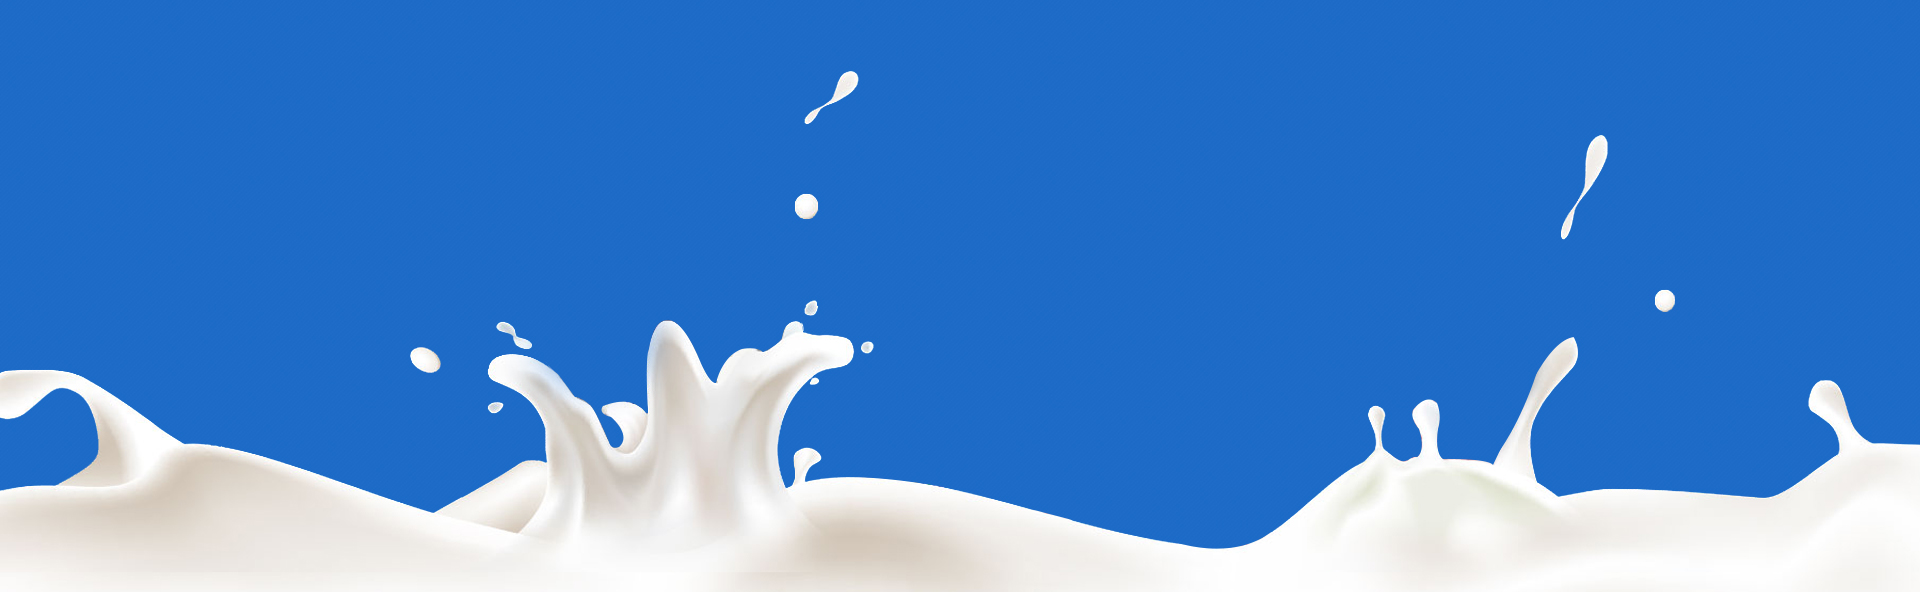 牛乳の壁紙,青い,水,空,図,牛乳